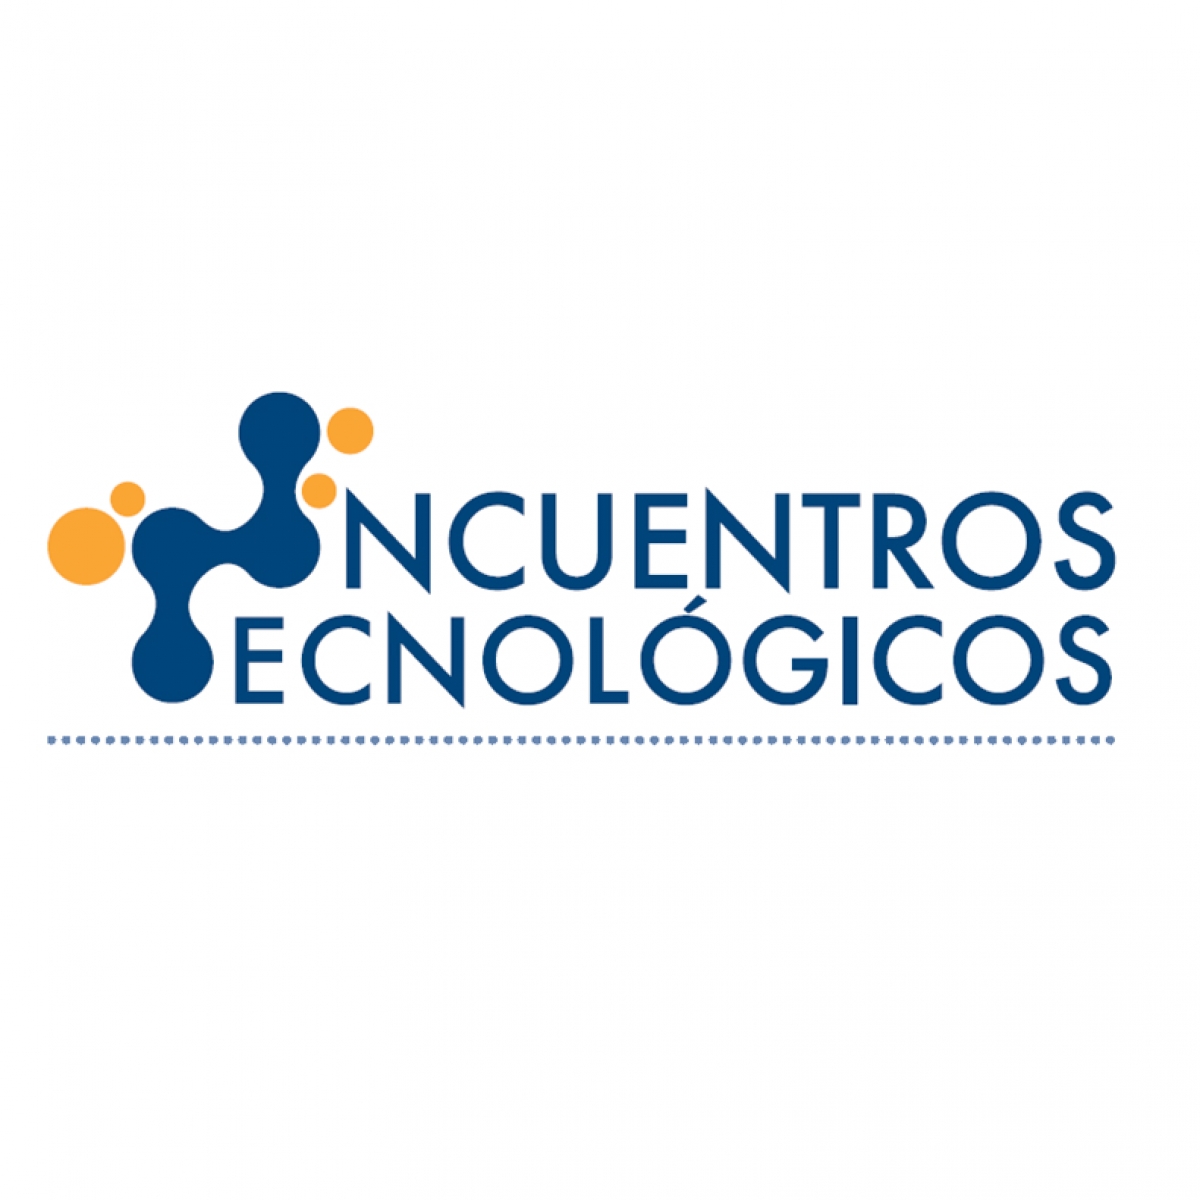 Encuentros Tecnológicos #MeloApunto, enero 2017